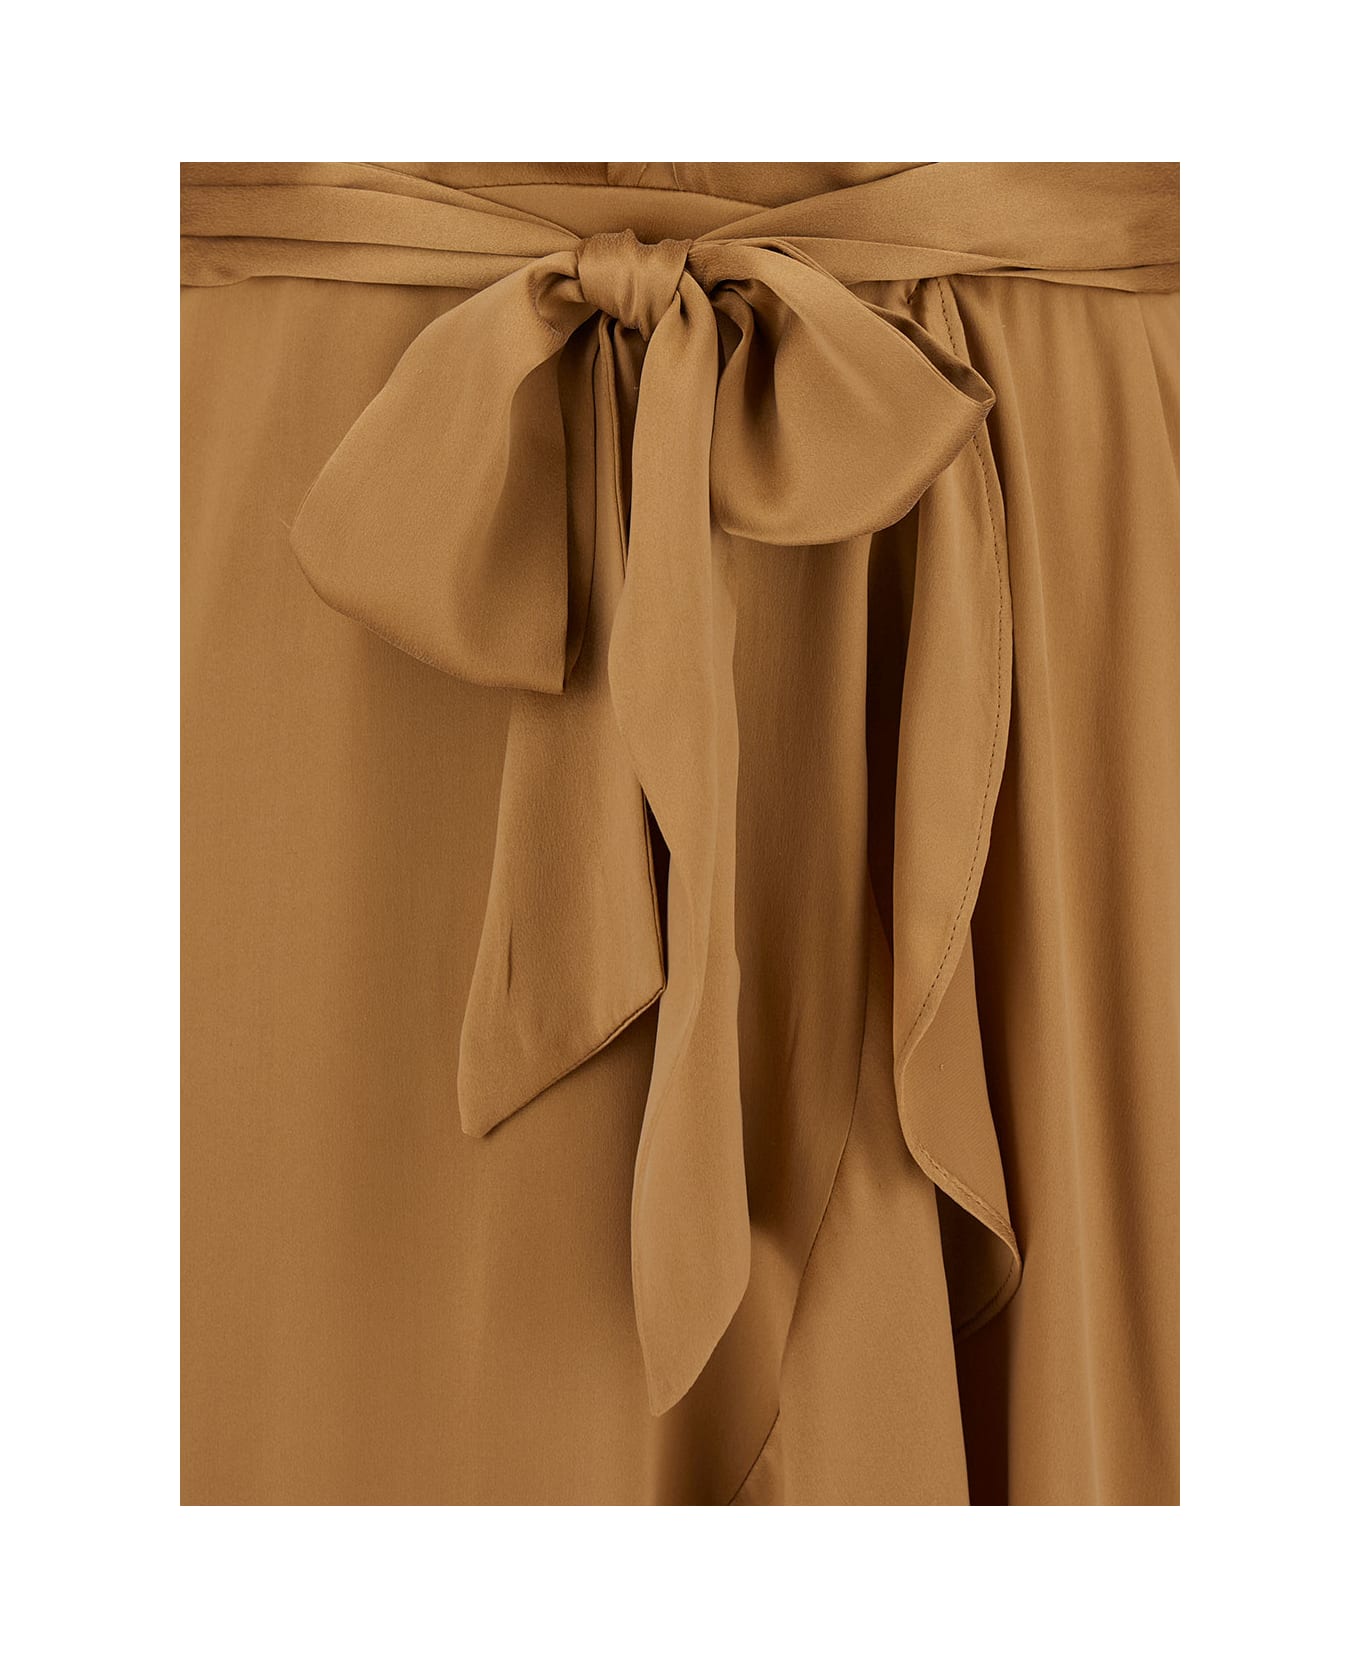 Zimmermann Midi Asymmetric Beige Dress With Belt In Silk Woman - Beige